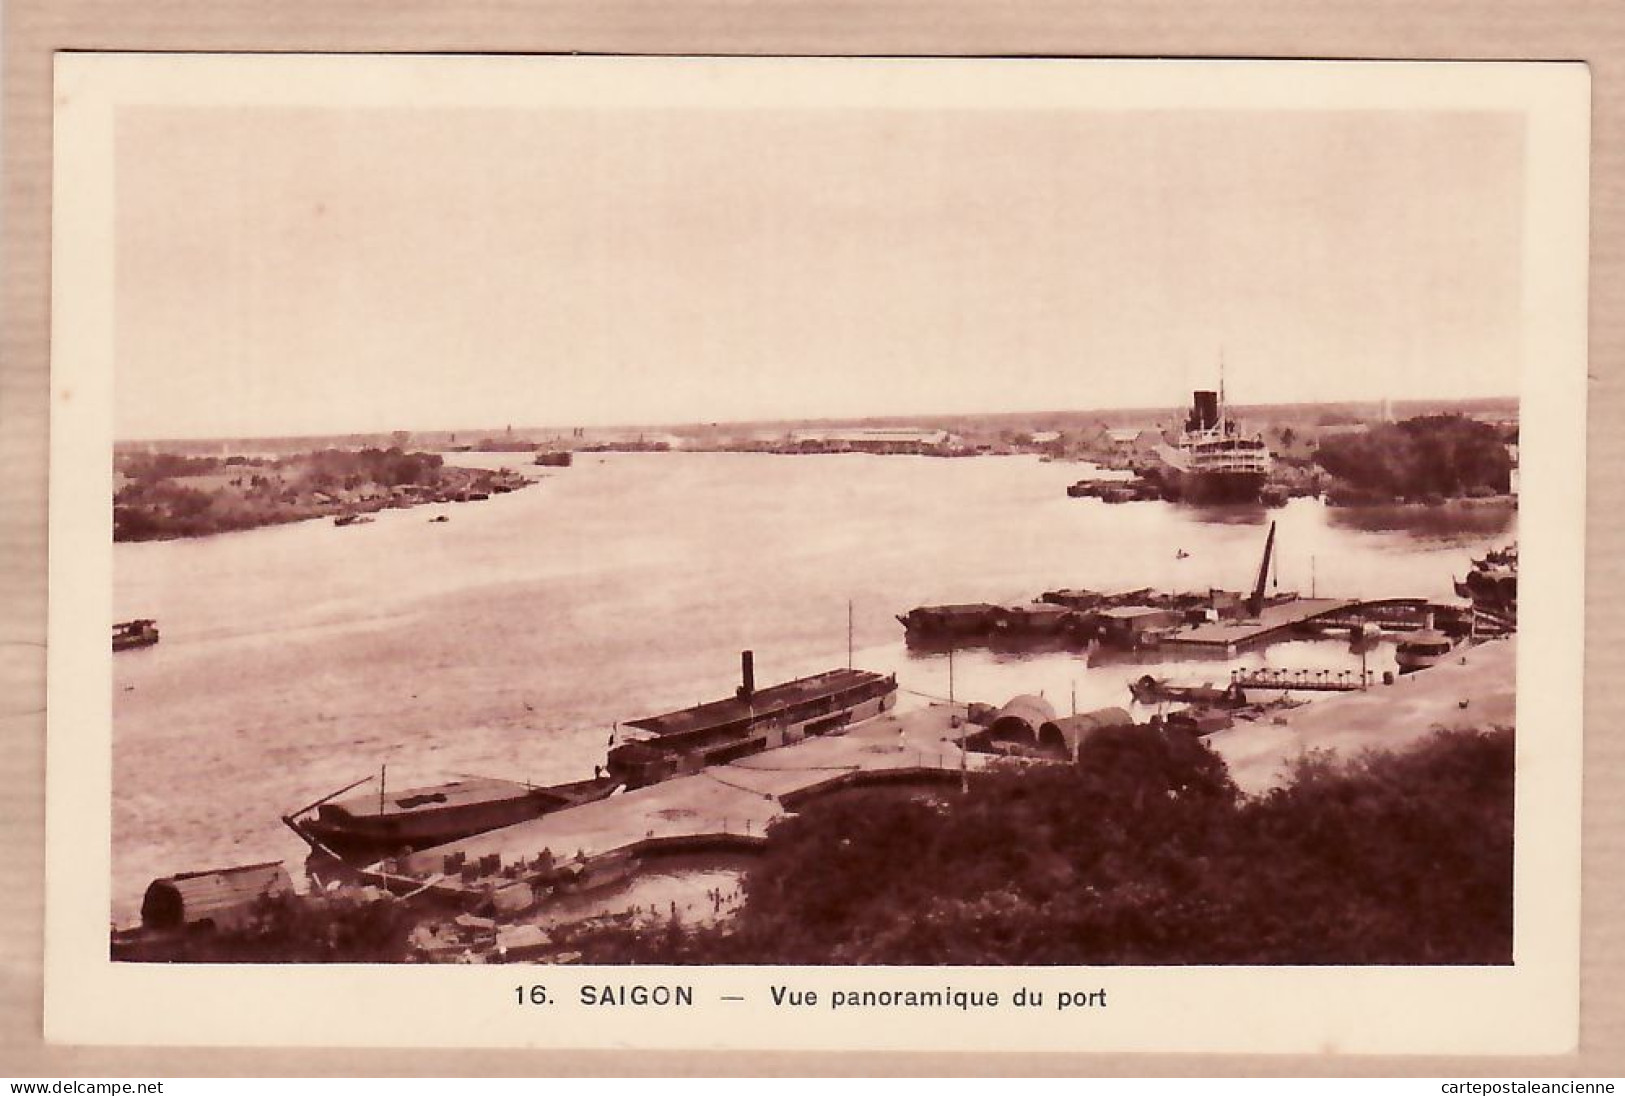 00985 ● SAIGON Vue Panoramique Du Port Indochine Tonkin Viet-Nam 1930 - Photo NADAL BRAUN N°16 - Vietnam